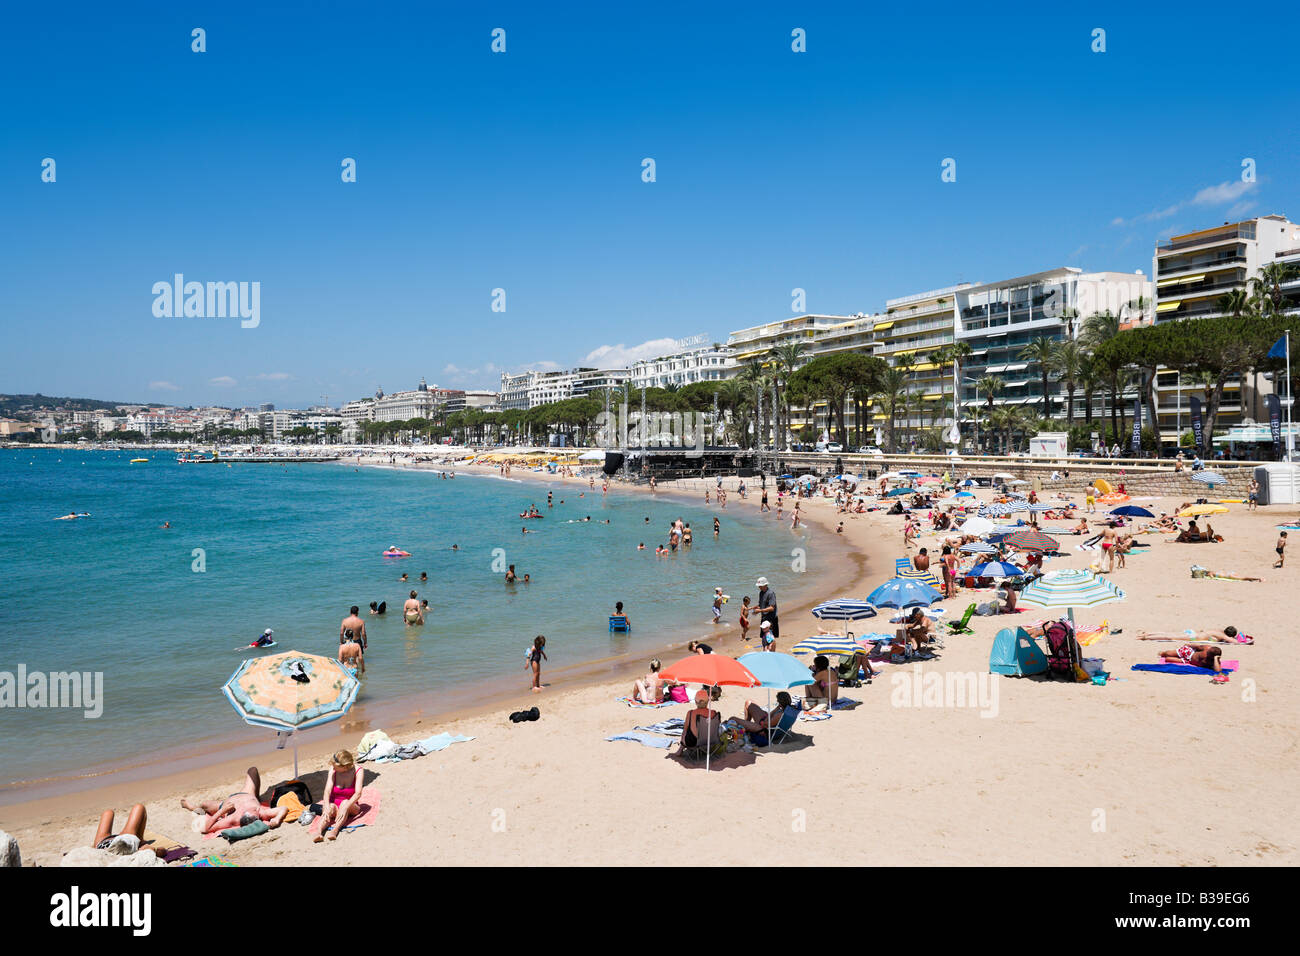 Plage de la Croisette (La Croisette Beach), Cannes, Cote d'Azur, Provence, France Stock Photo